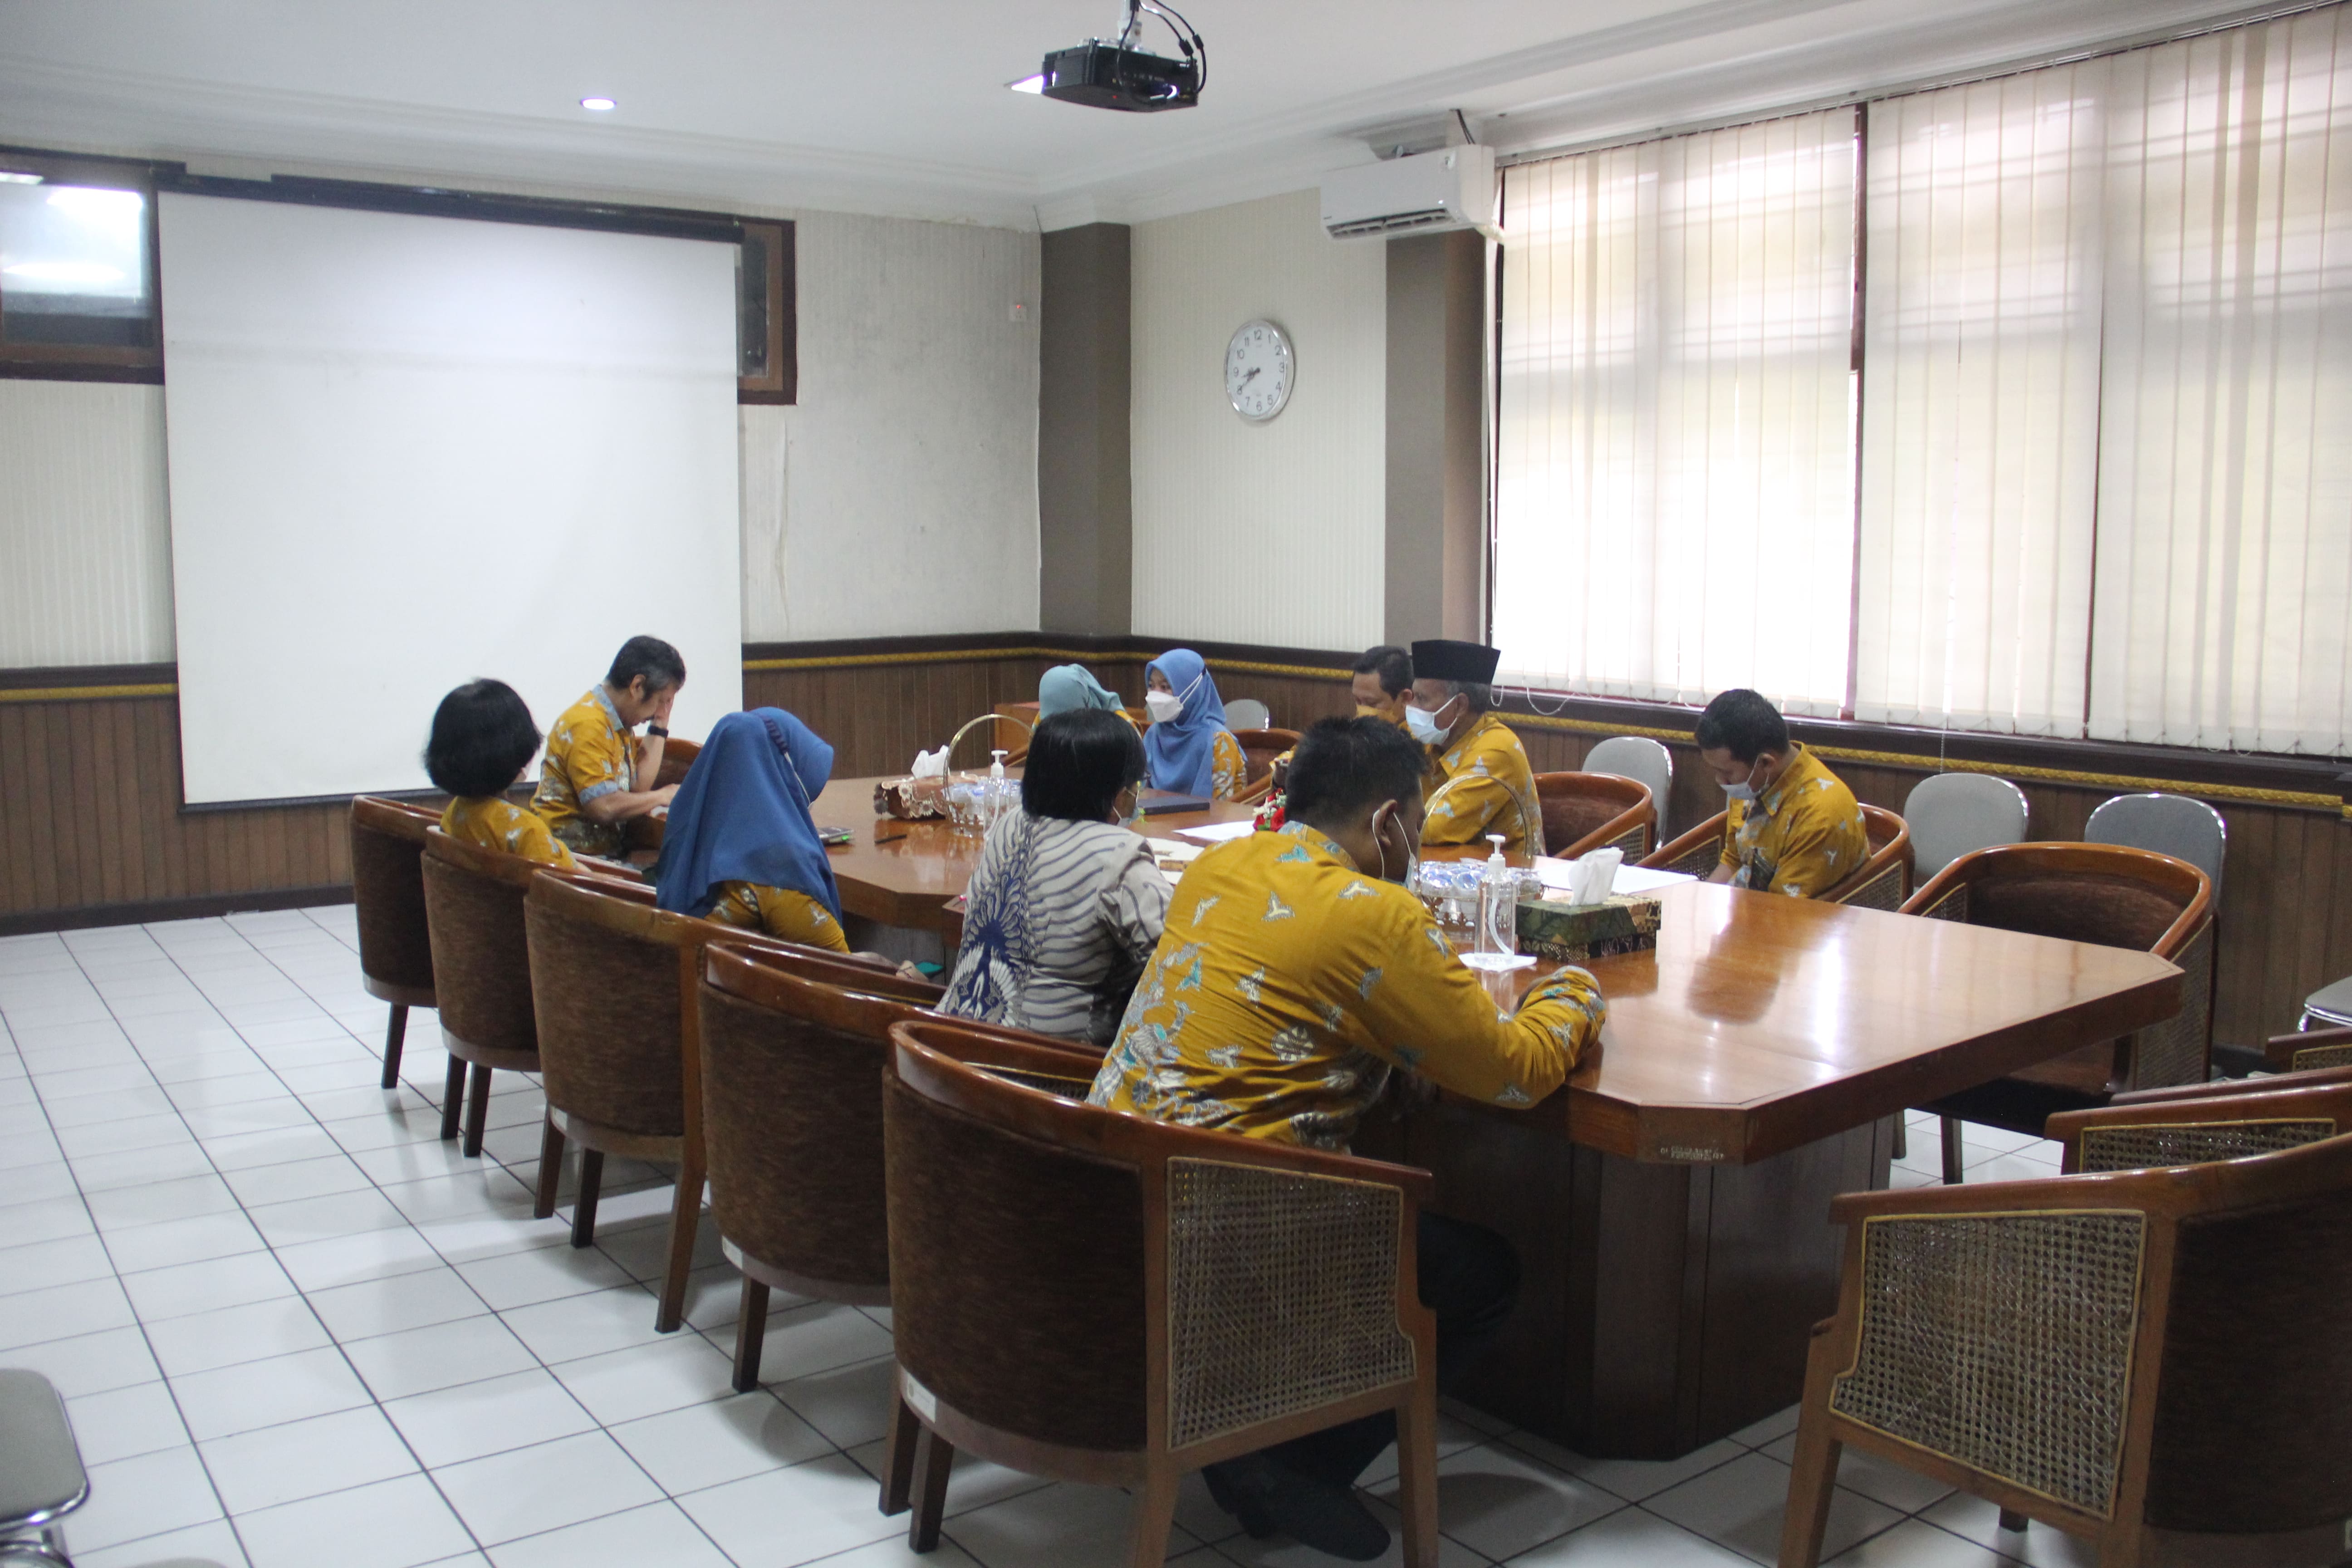 Rapat Kedua Koordinasi Teknis Pelaksanaan SPPT-TI Pengadilan Negeri Yogyakarta